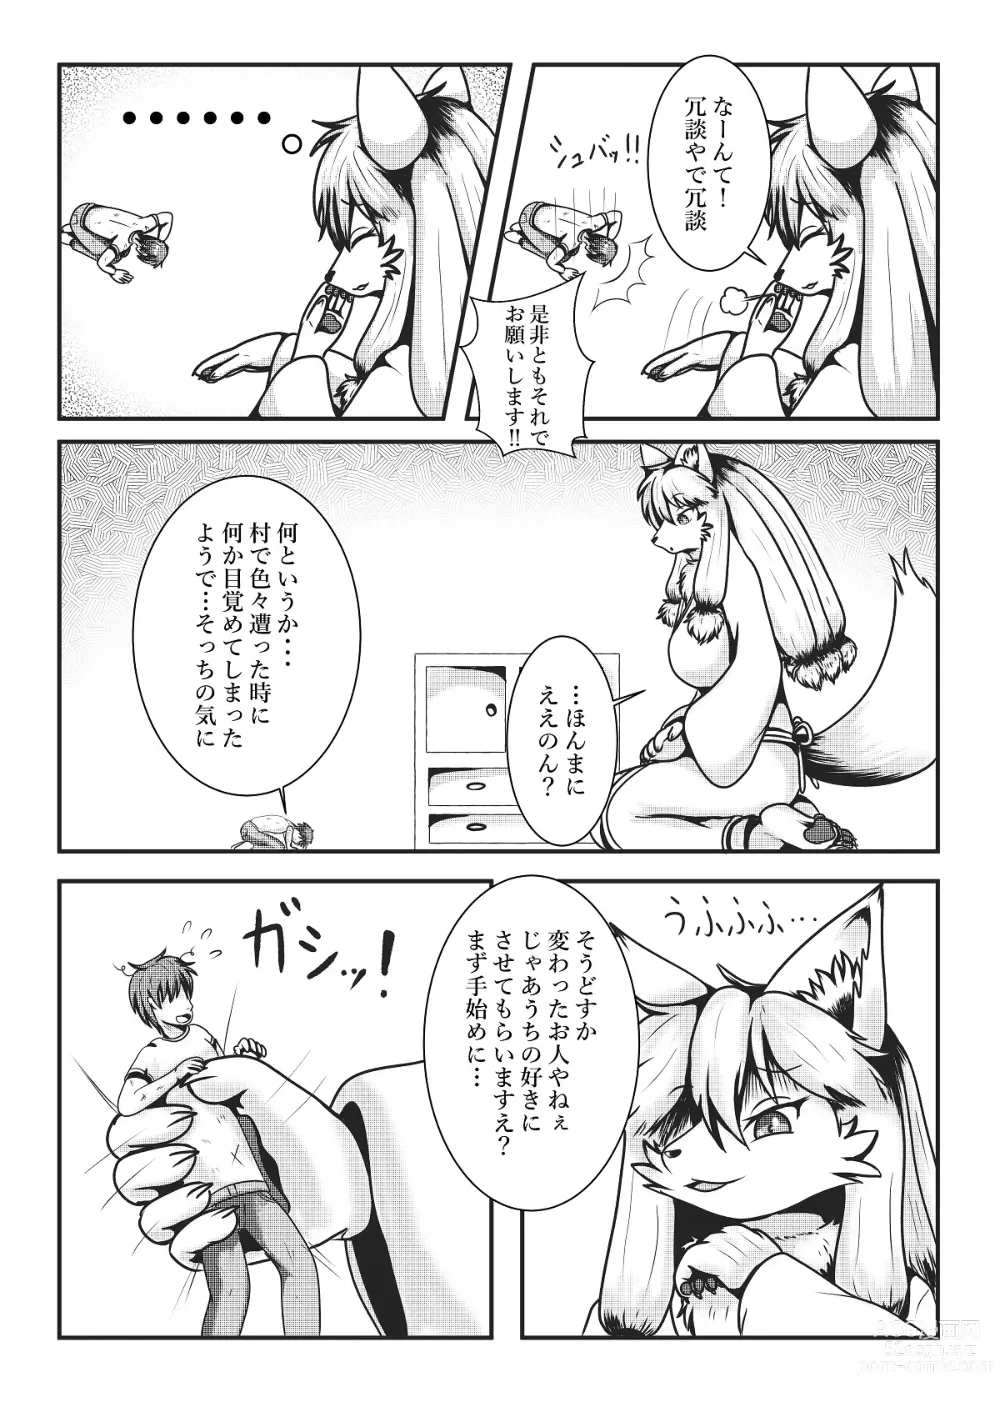 Page 13 of doujinshi Kyoju mura